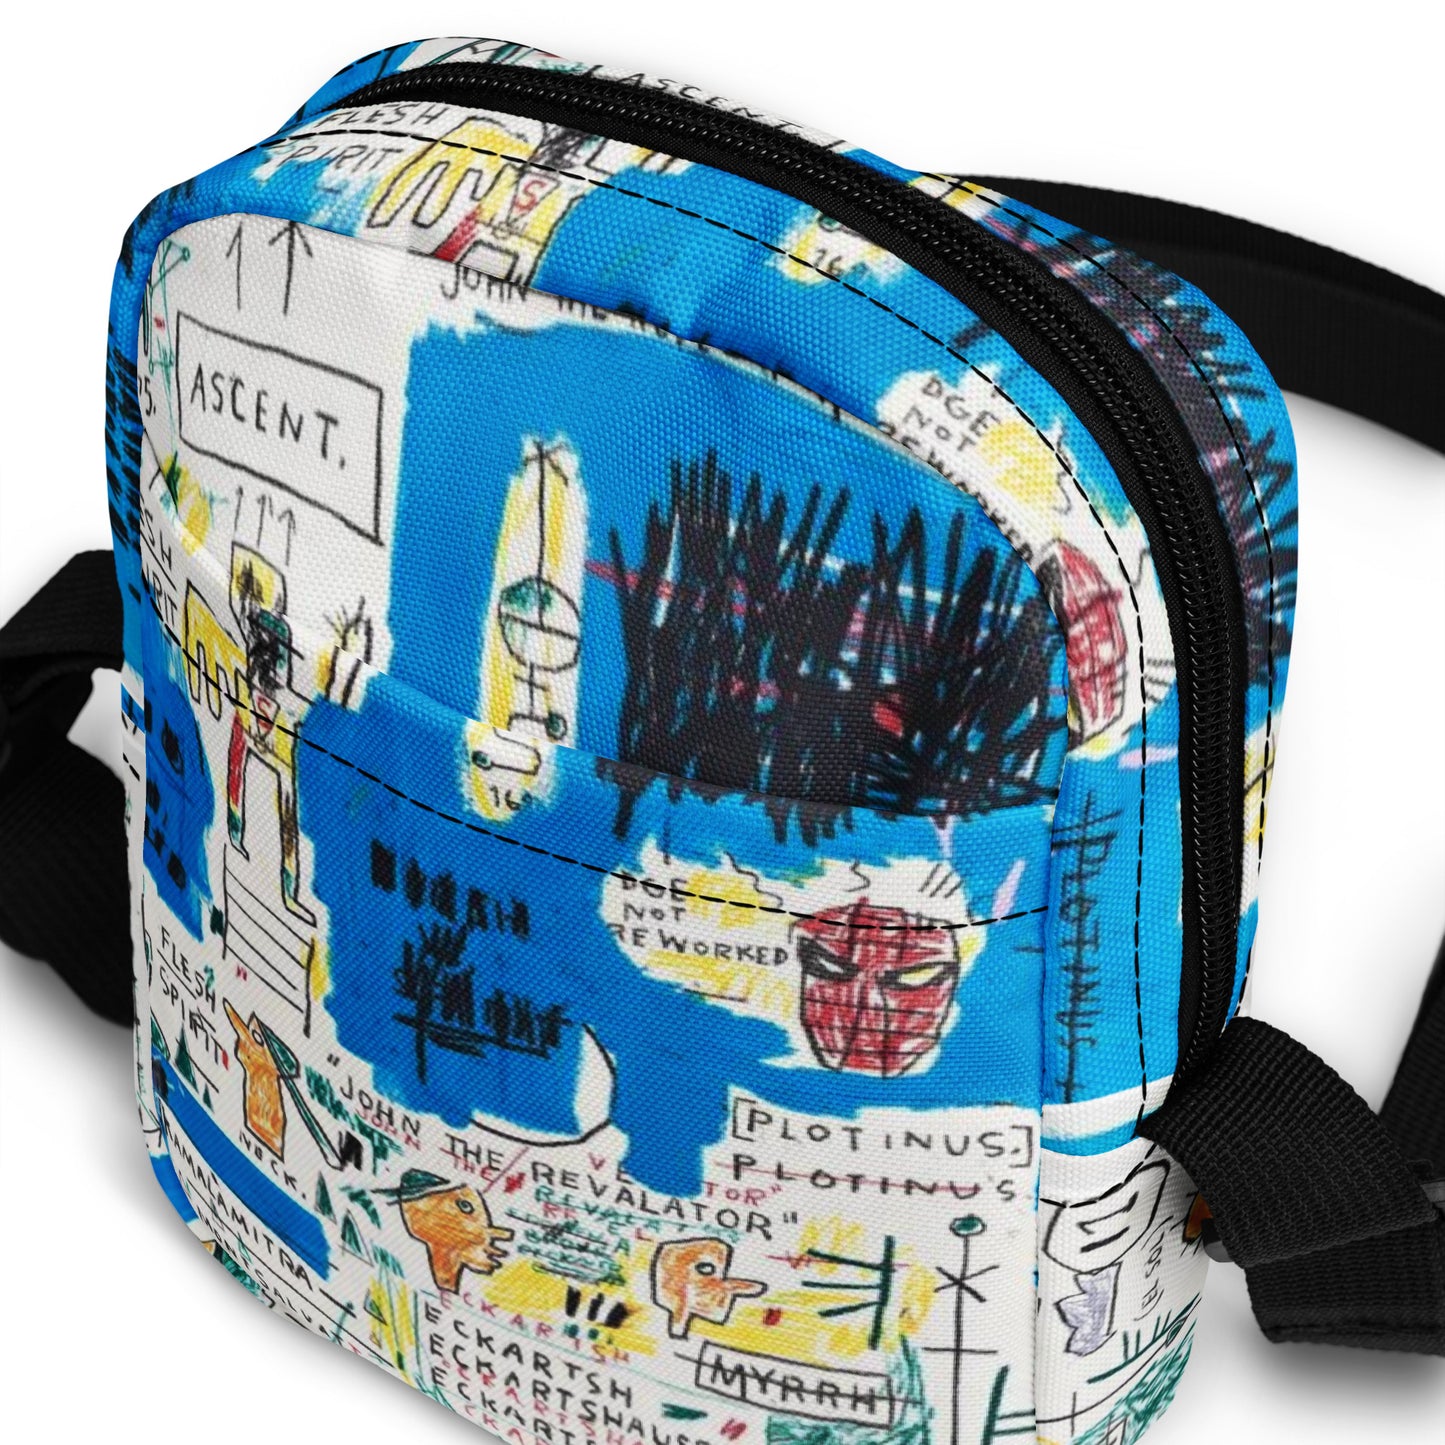 Jean-Michel Basquiat "Ascent" Artwork Bag